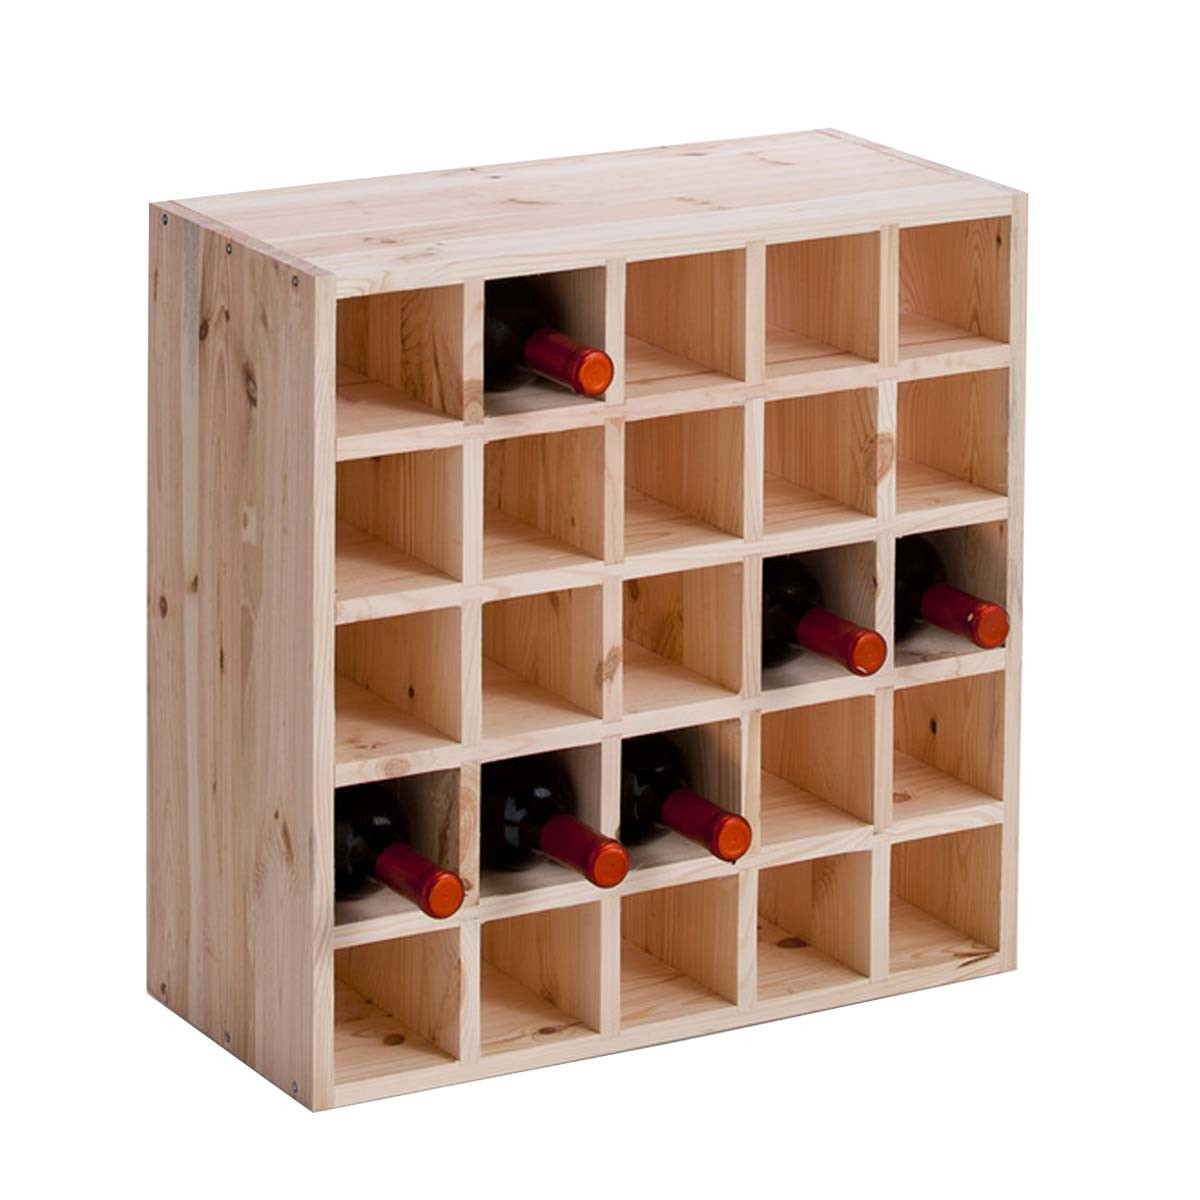 Range bouteille - casier a bouteille - casier a vin - rangement bouteille